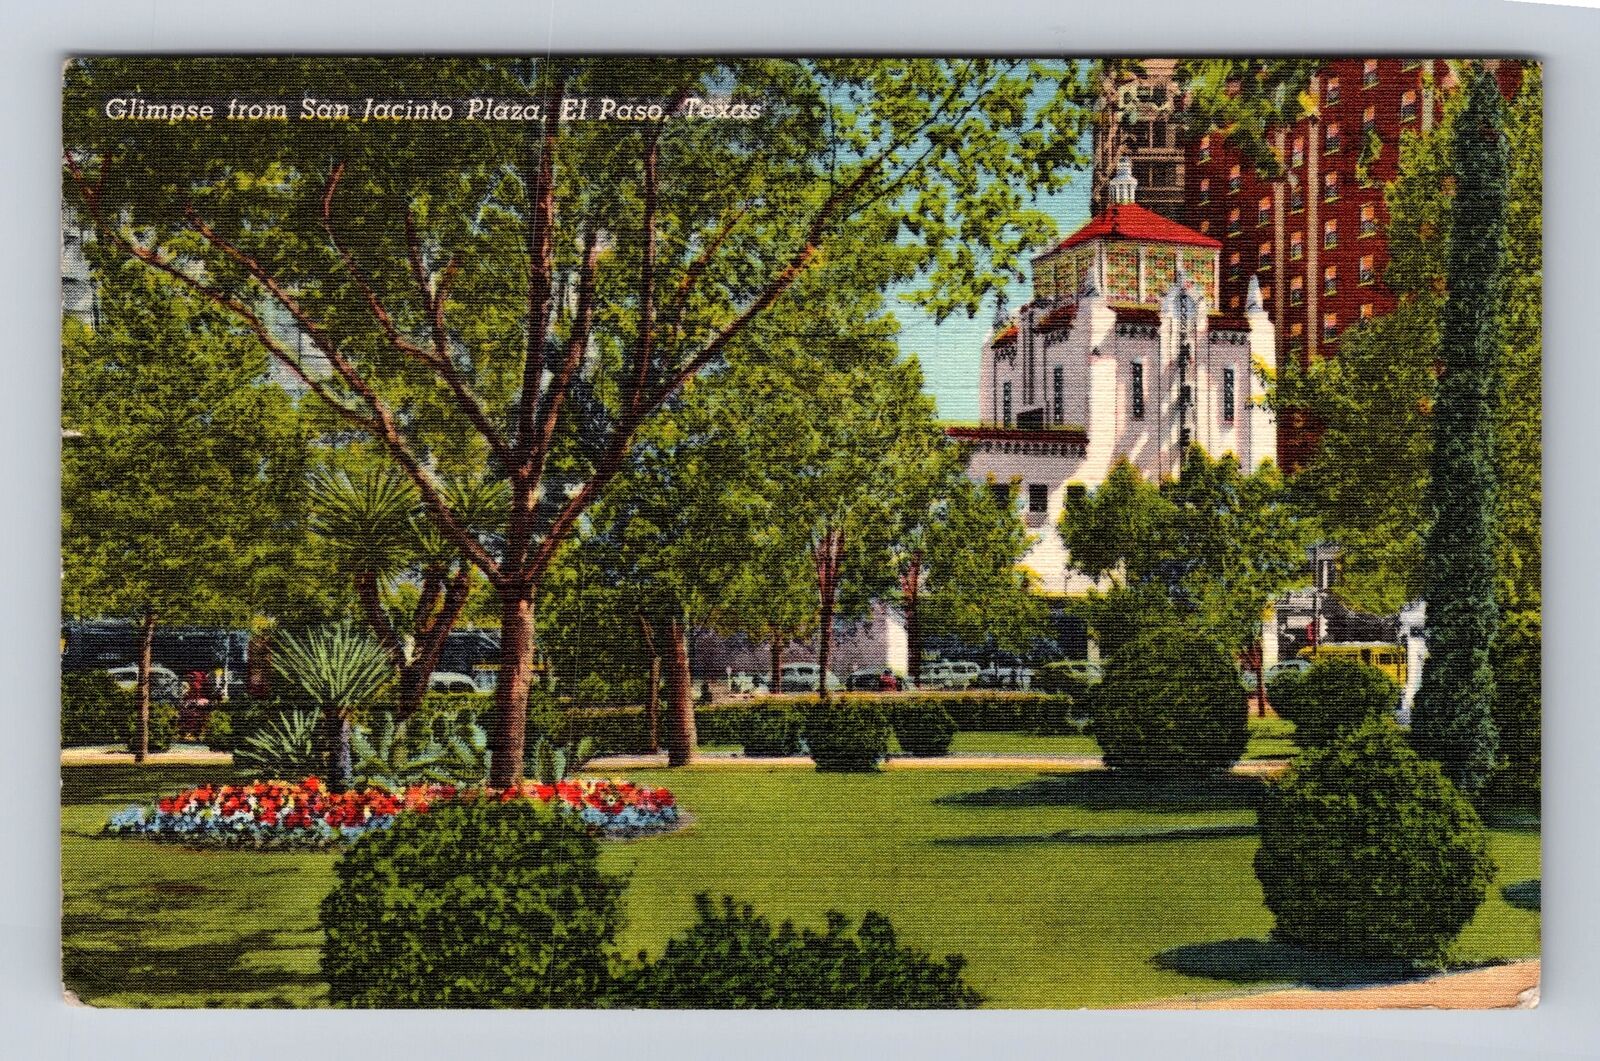 El Paso TX-Texas, Glimpse From San Jacinto Plaza, Antique, Vintage Postcard